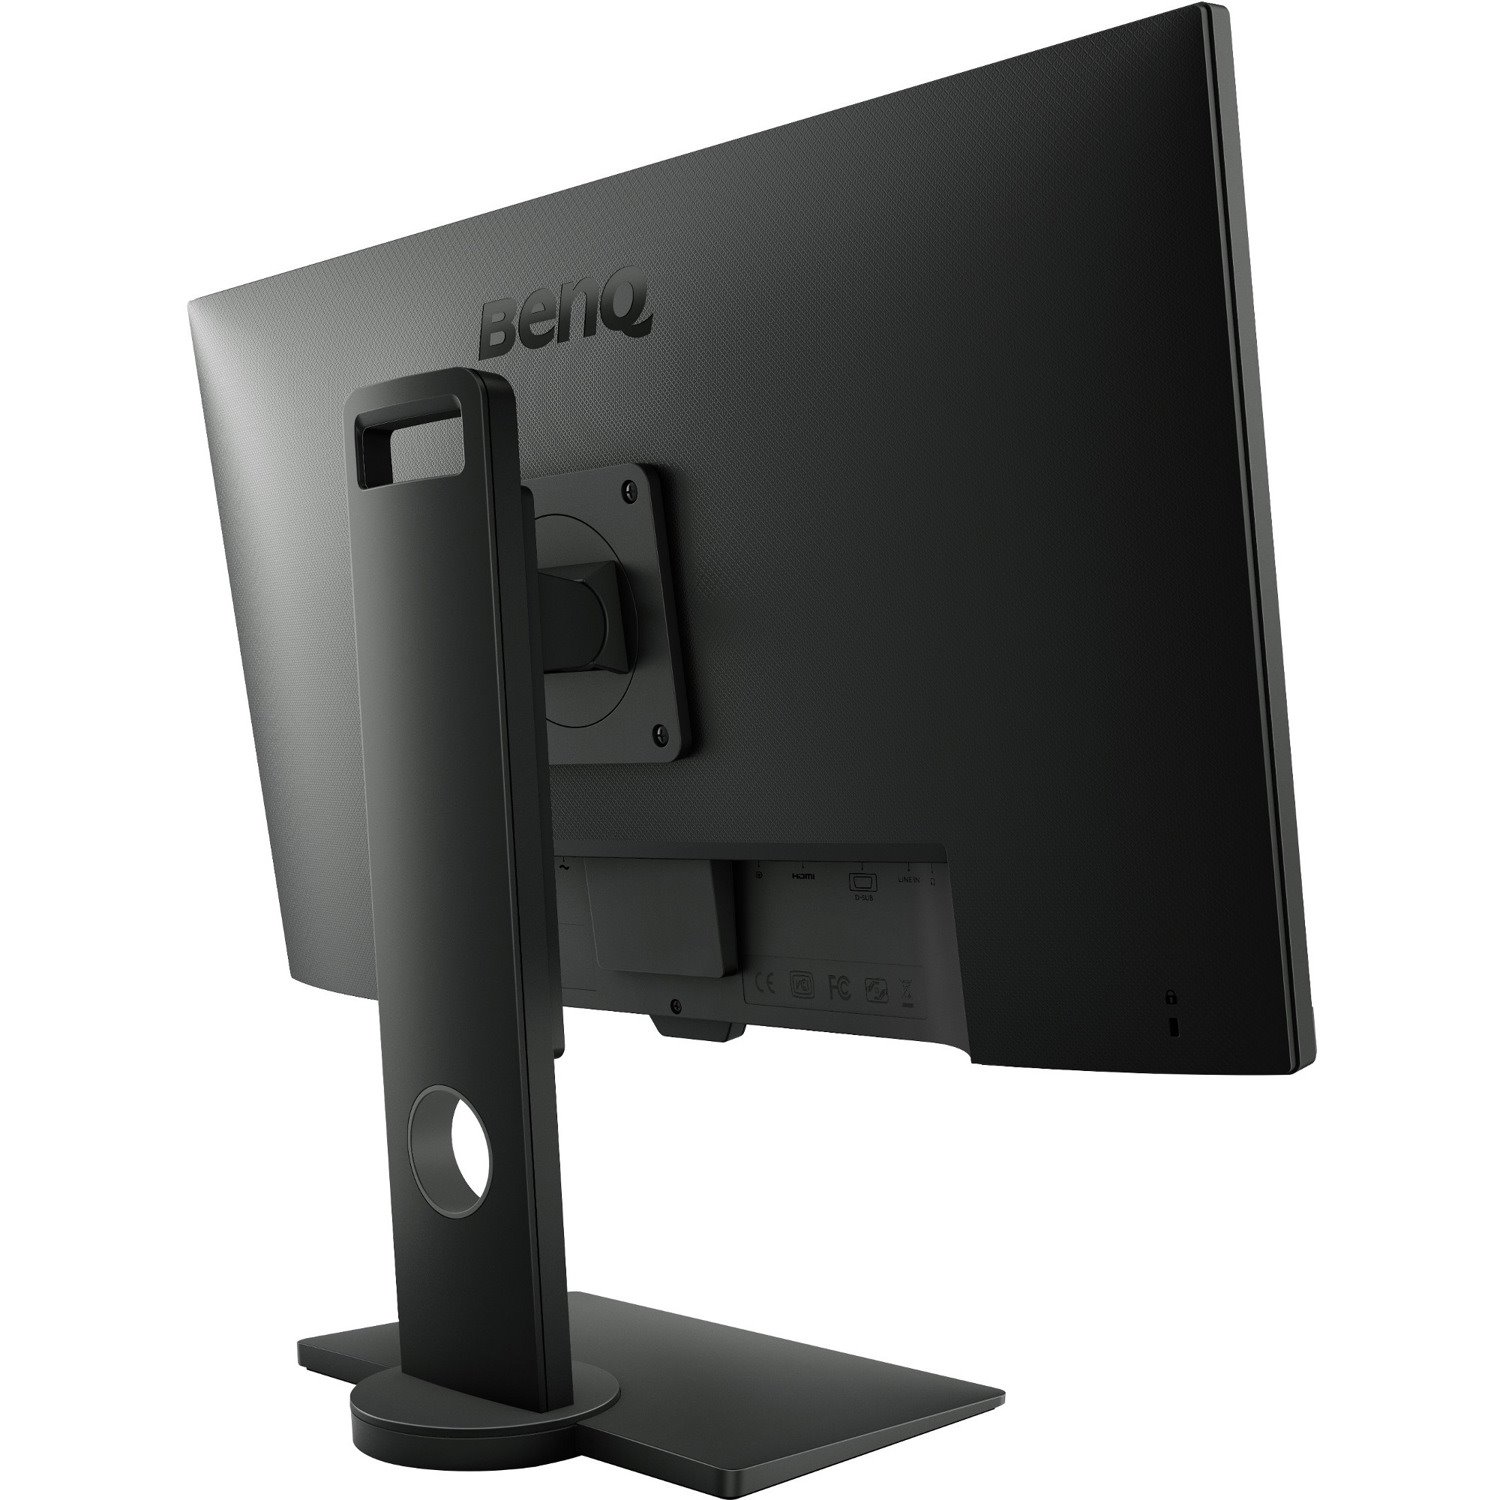 BenQ BL2780T 27" Class Full HD LCD Monitor - 16:9 - Black